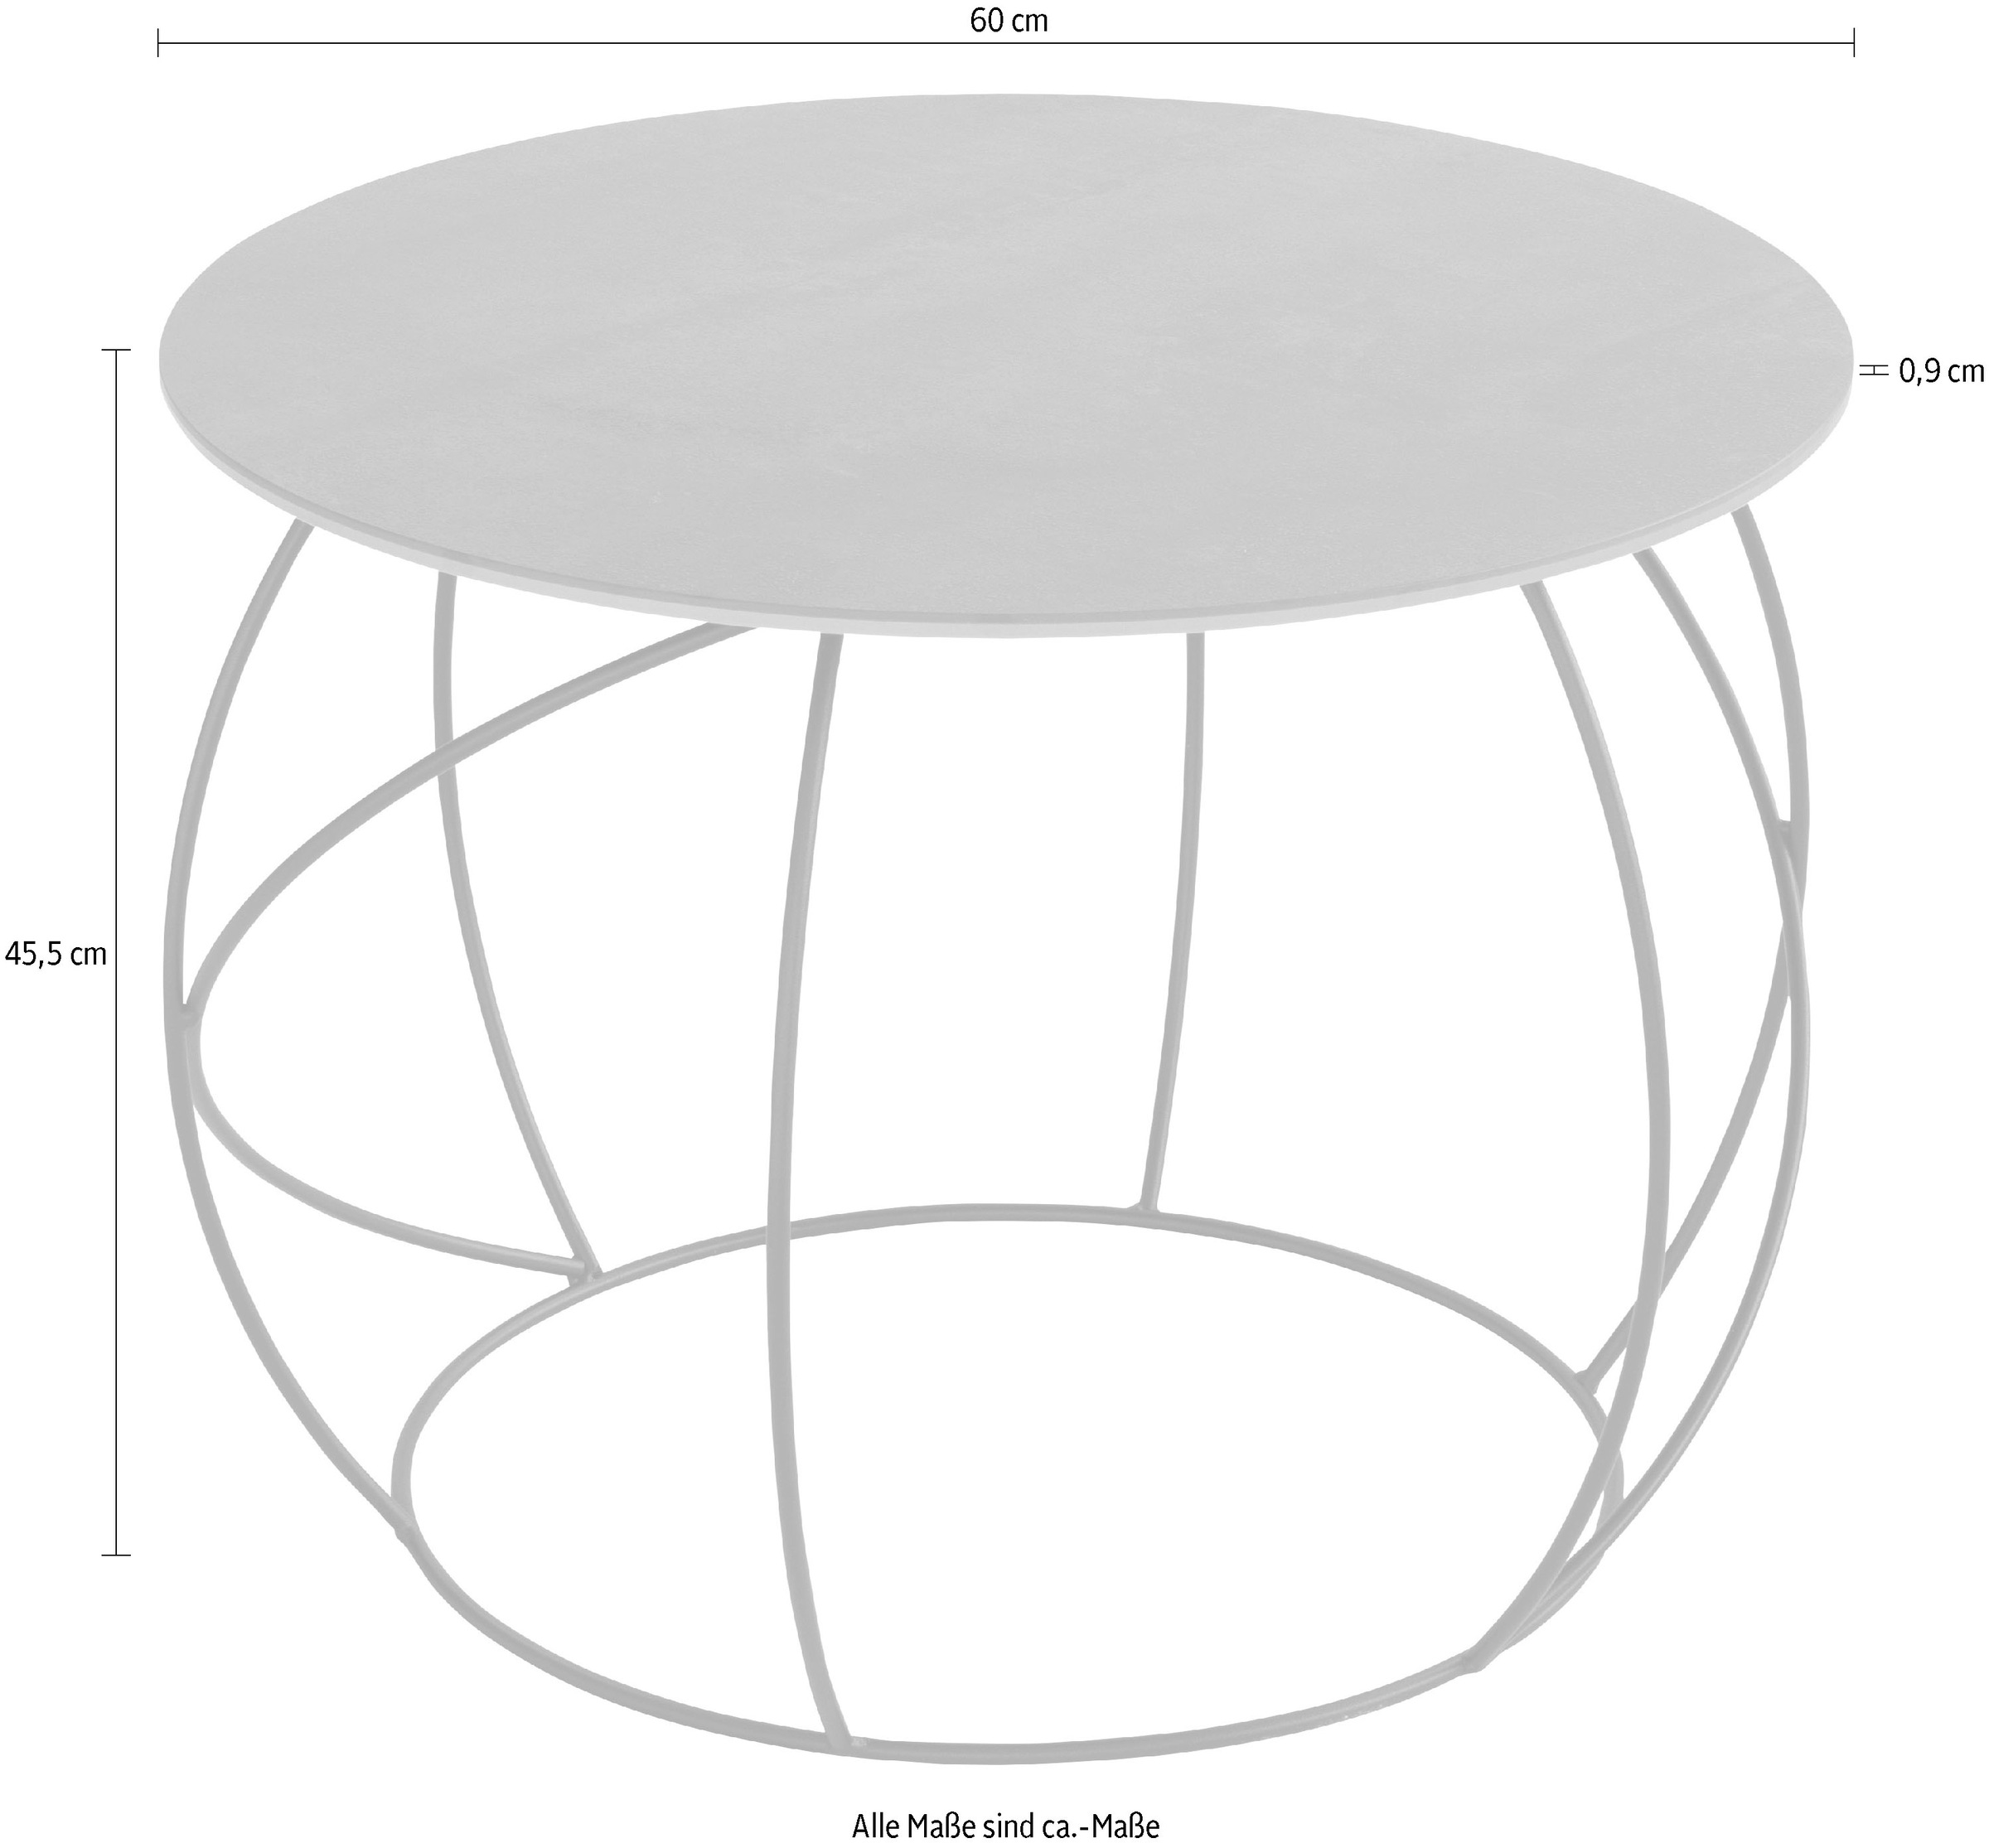 Henke Möbel Beistelltisch, Tischplatte Keramik aus hochwertiger Rechnung kaufen auf